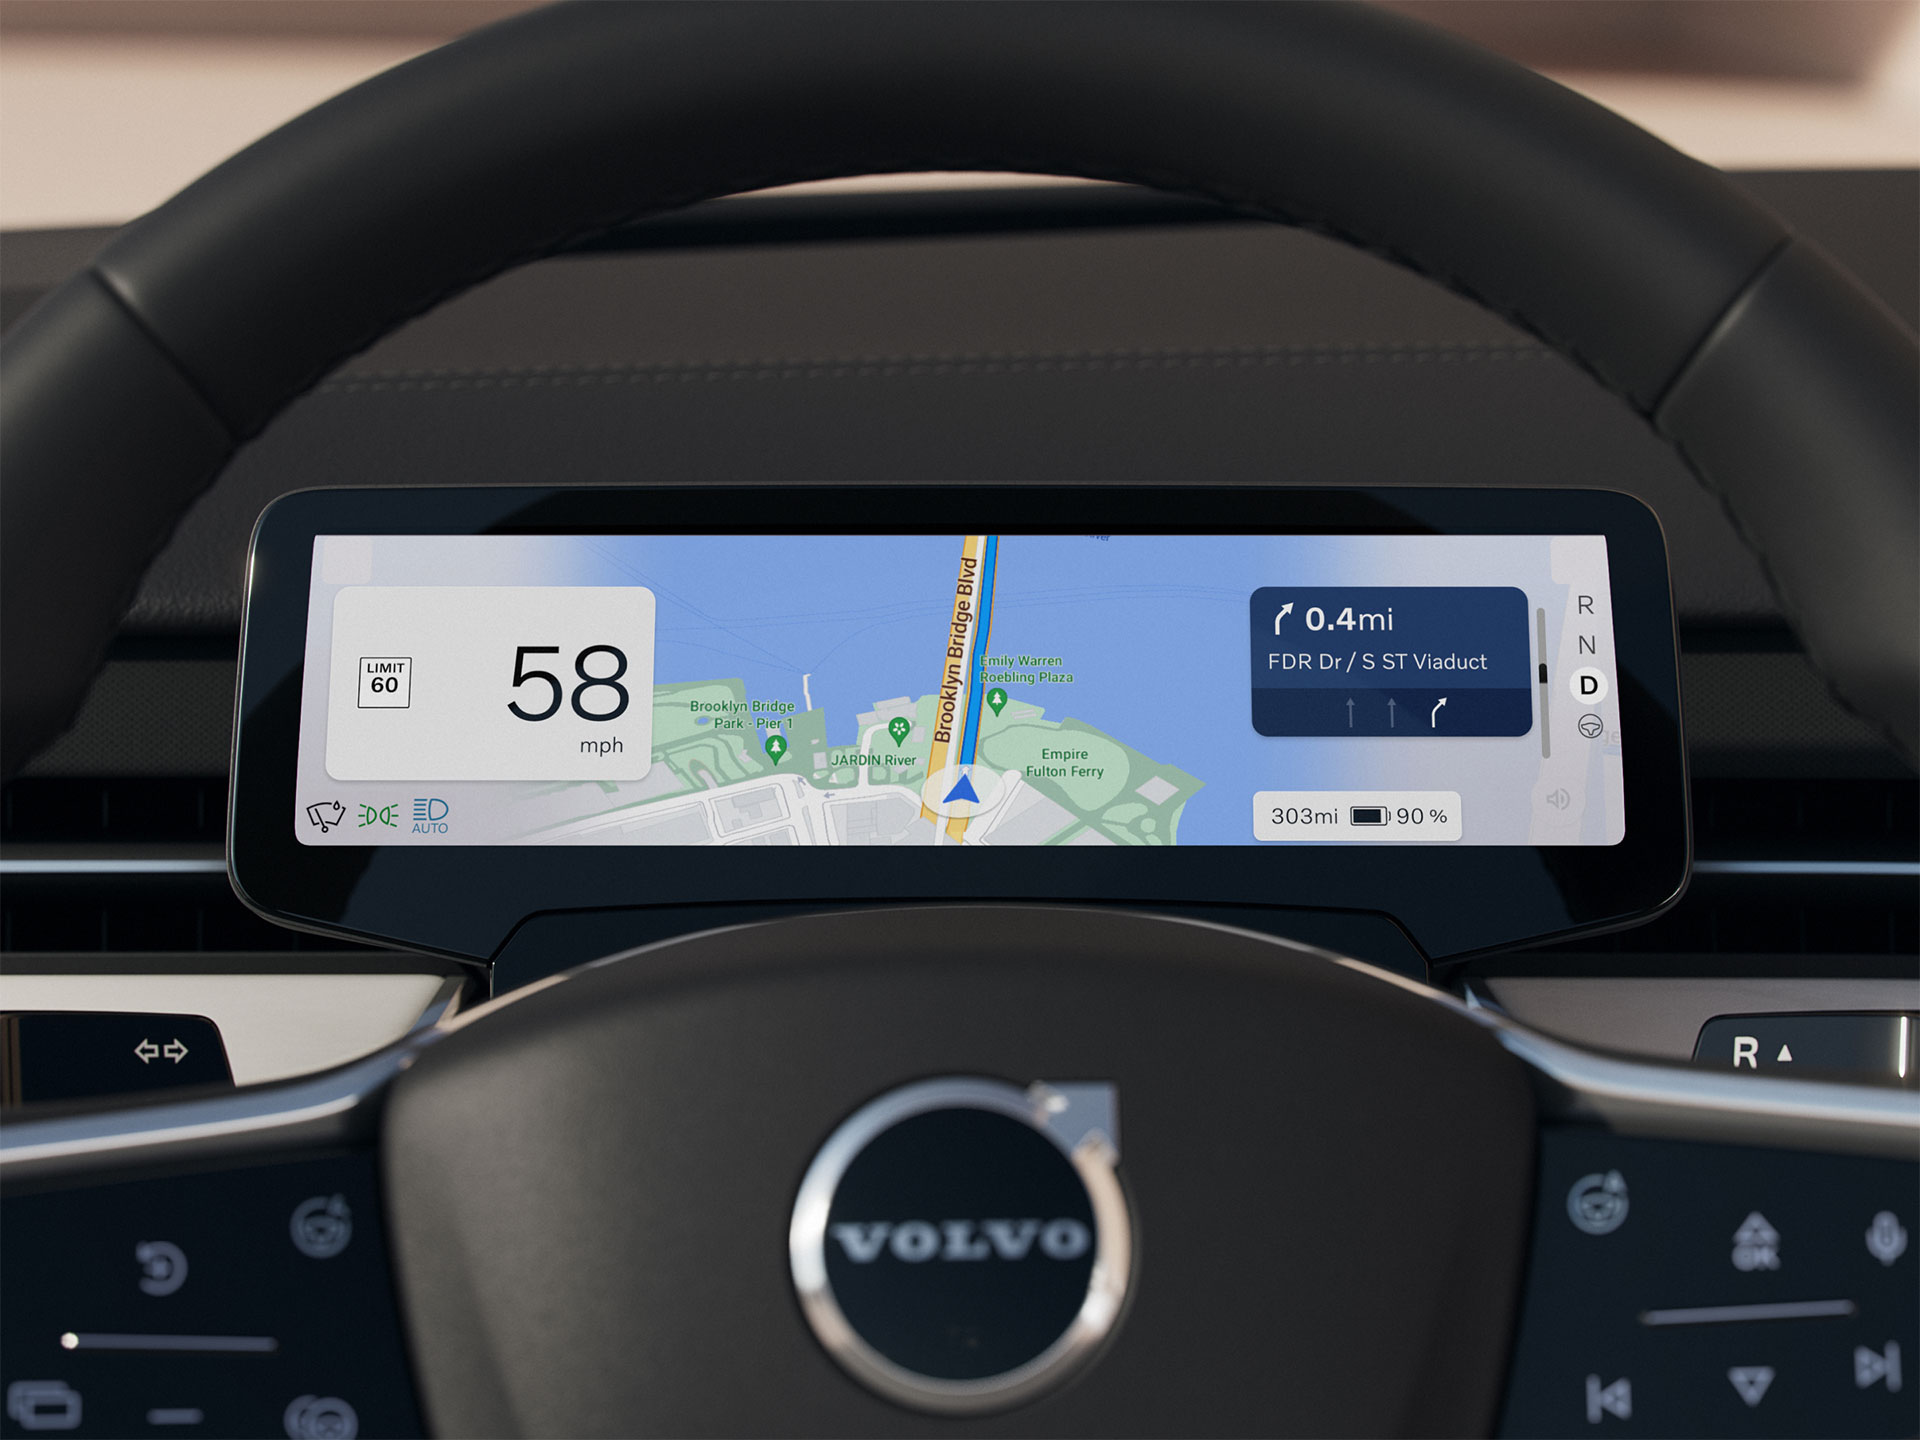 Зображення сенсорного дисплея водія зблизька, огляд із сидіння водія. На екрані відображається основна інформація для водія.